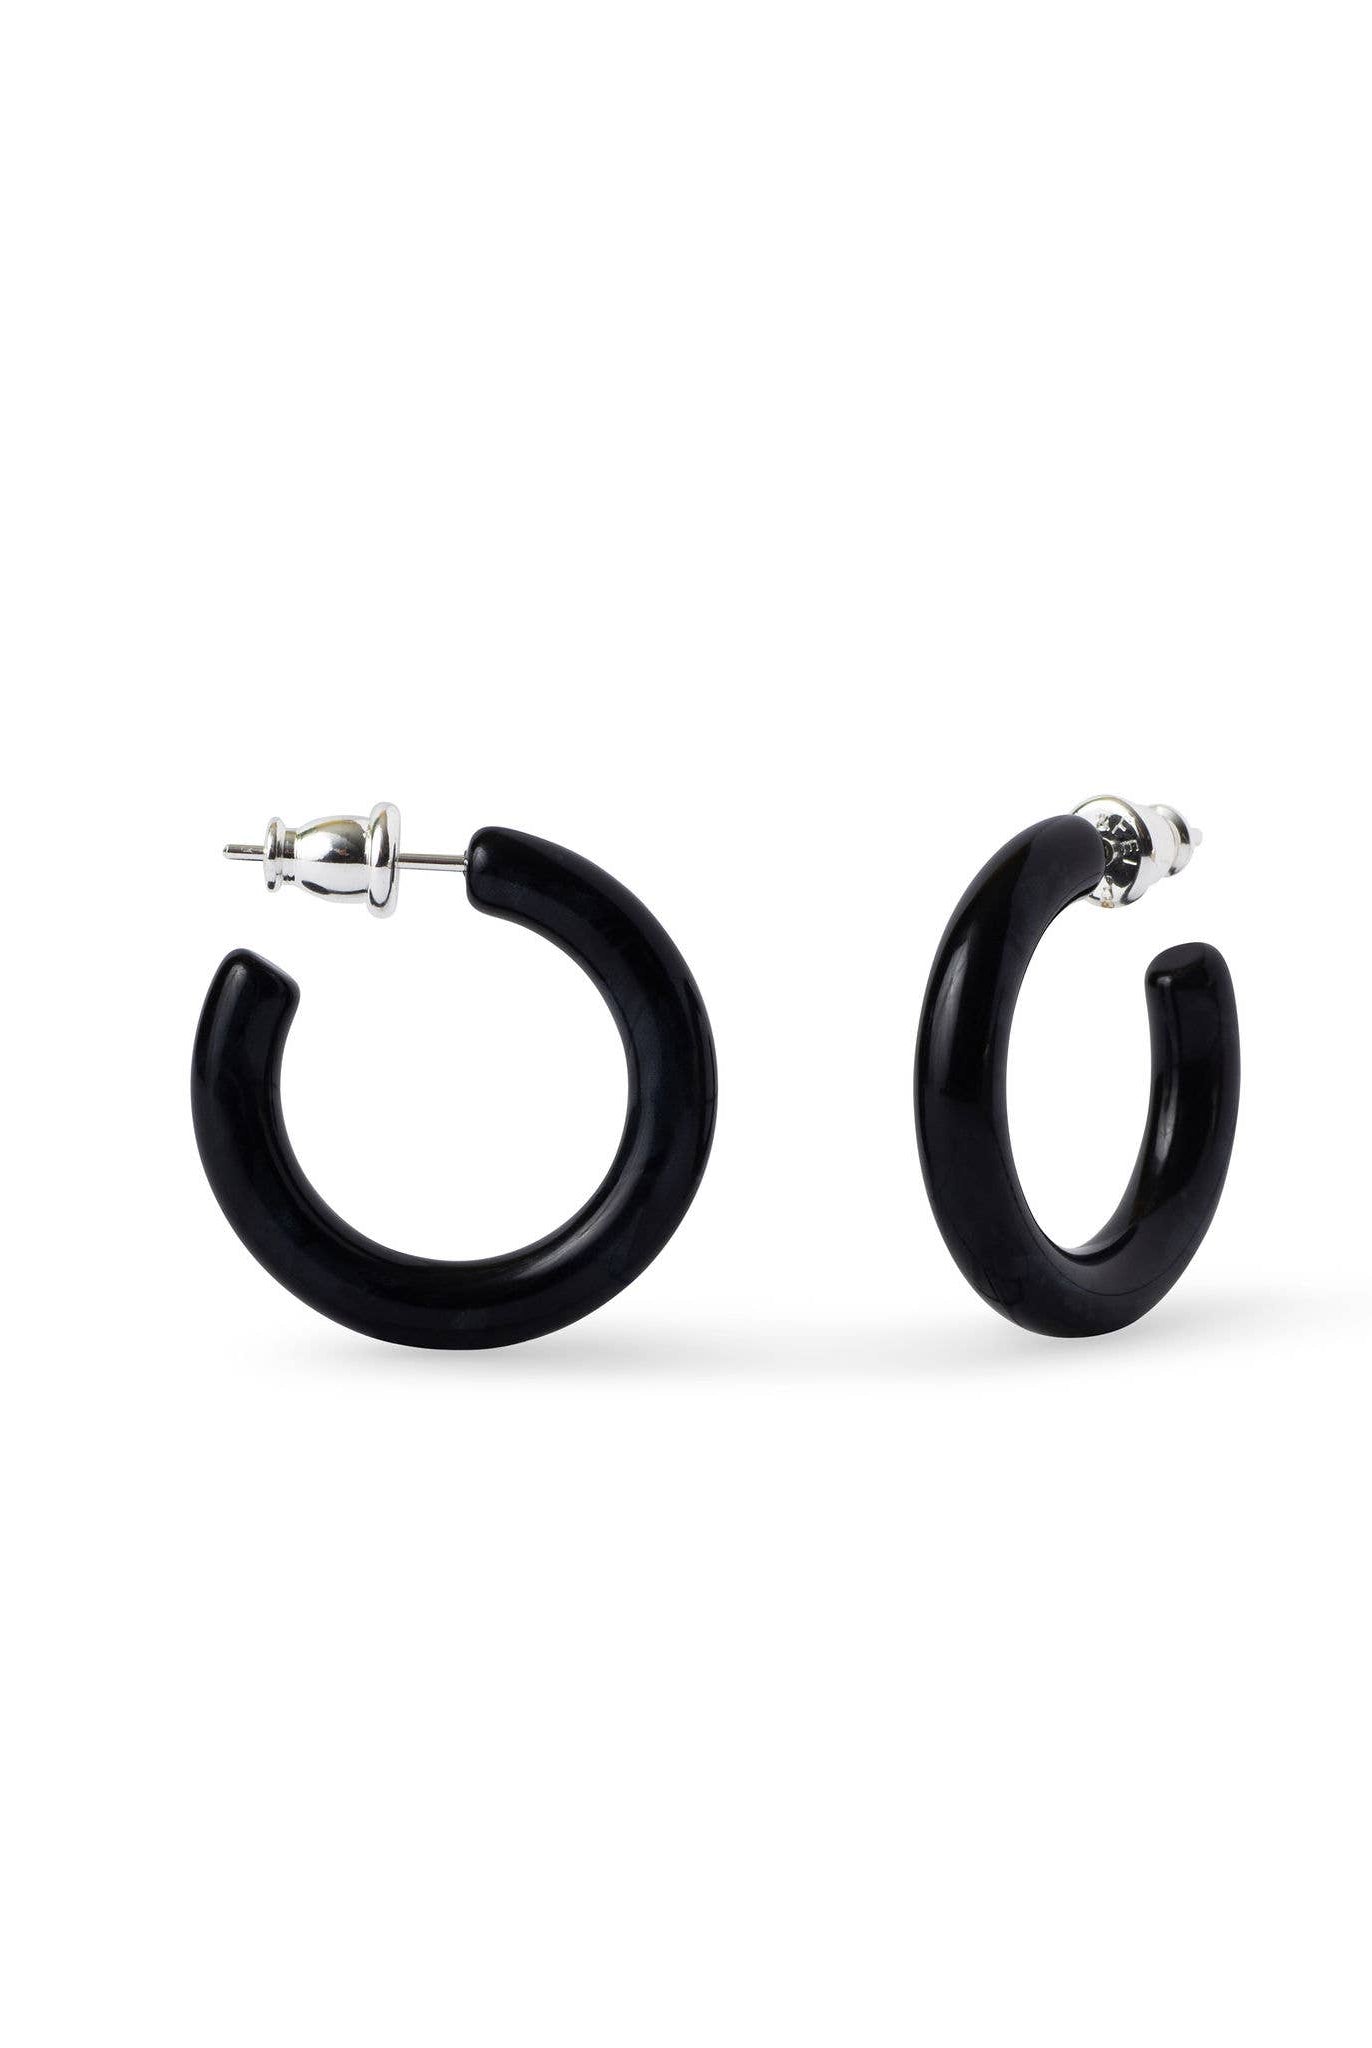 
  
  Small Acetate Hoop Earrings
  
